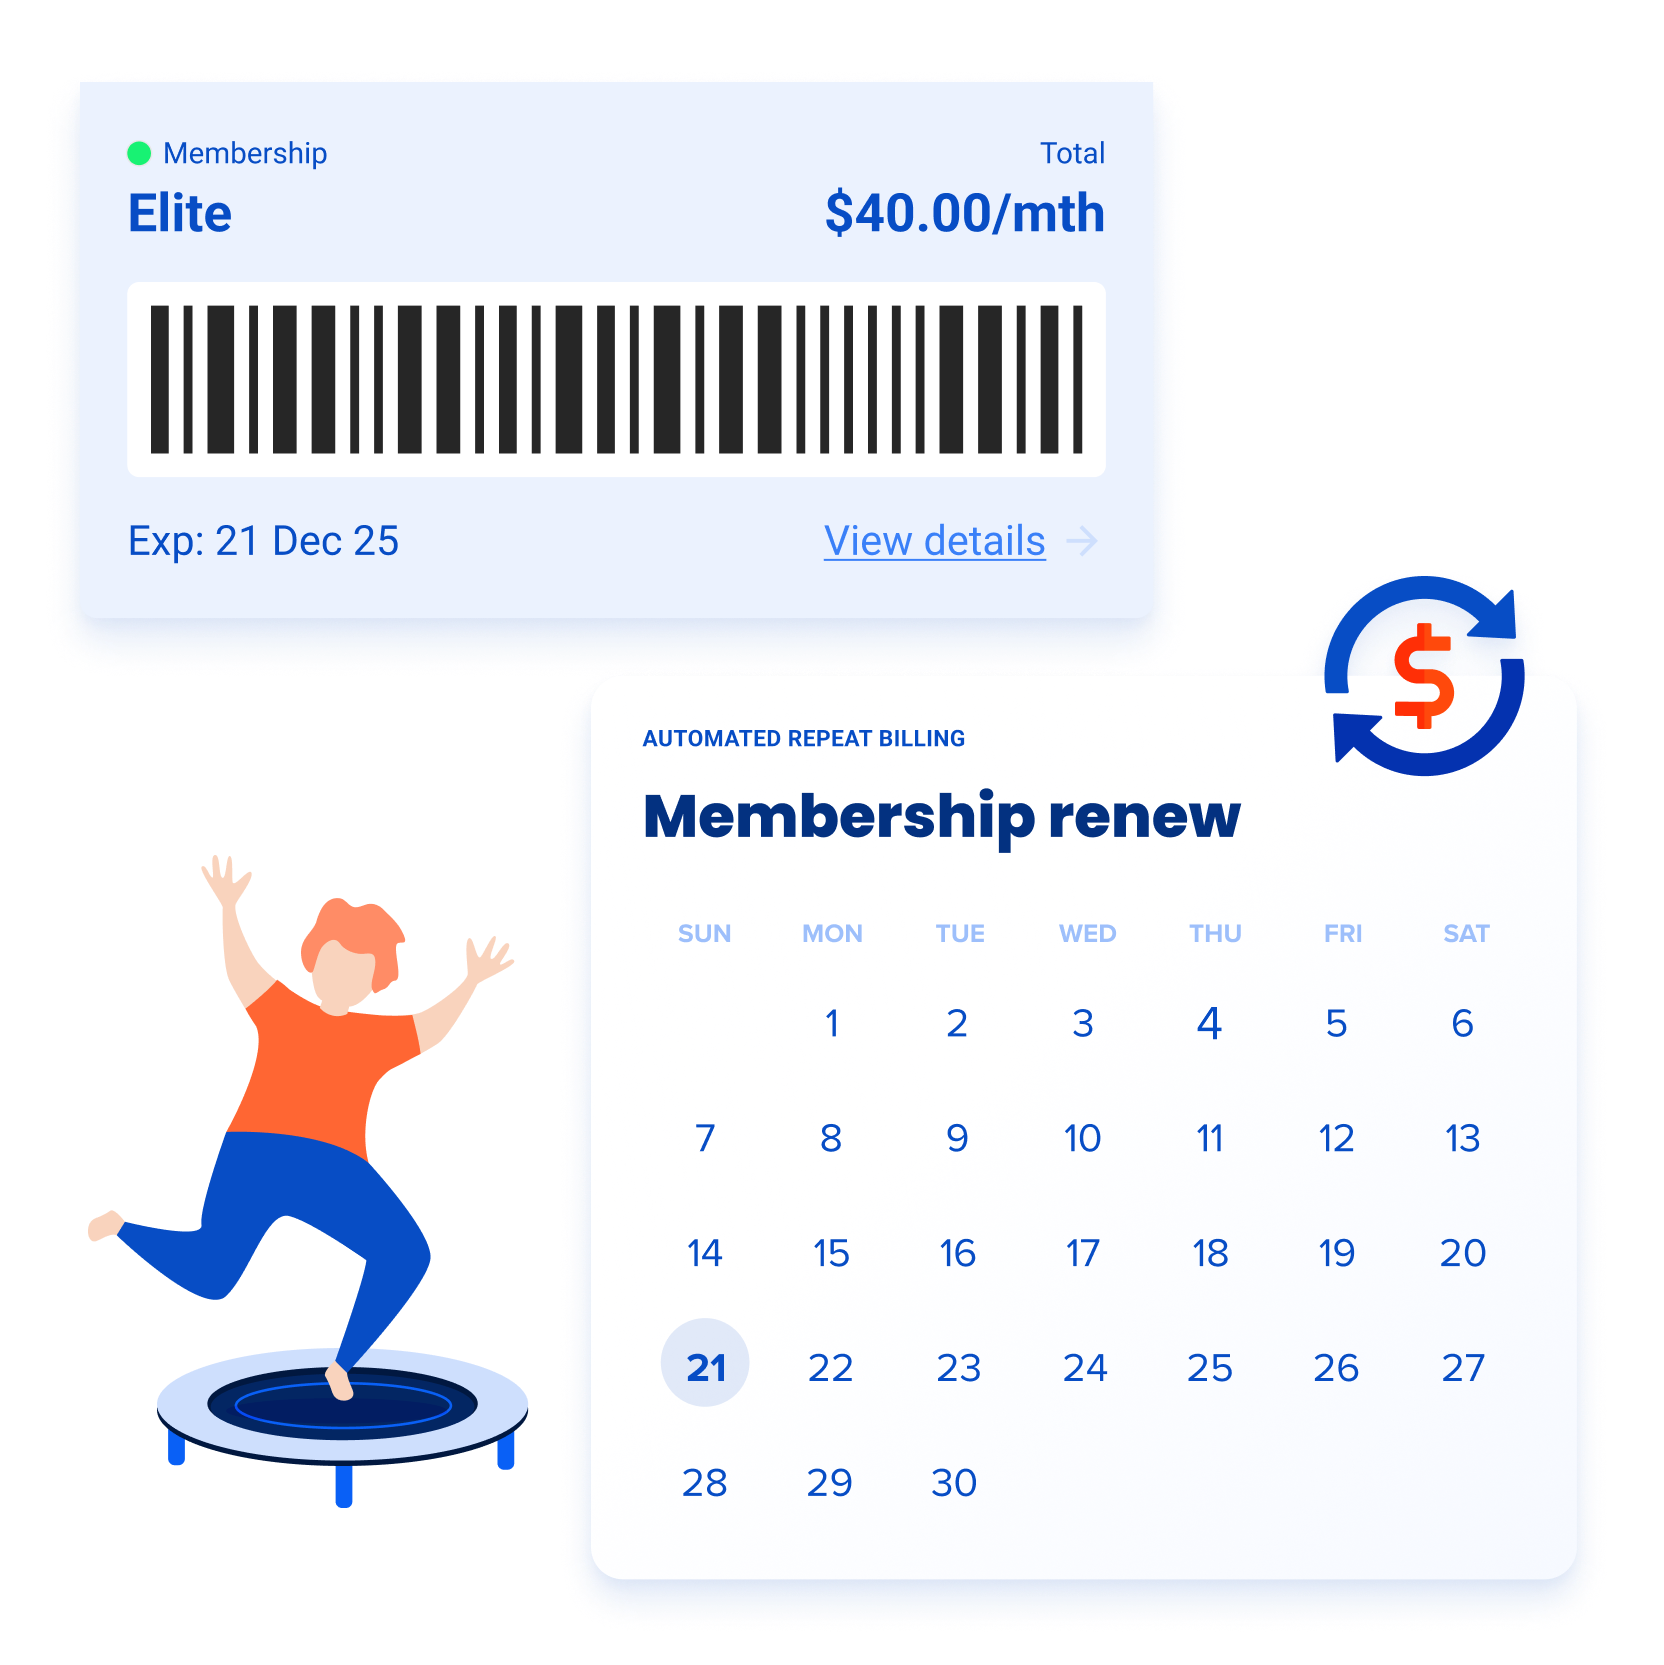 Membership renewal